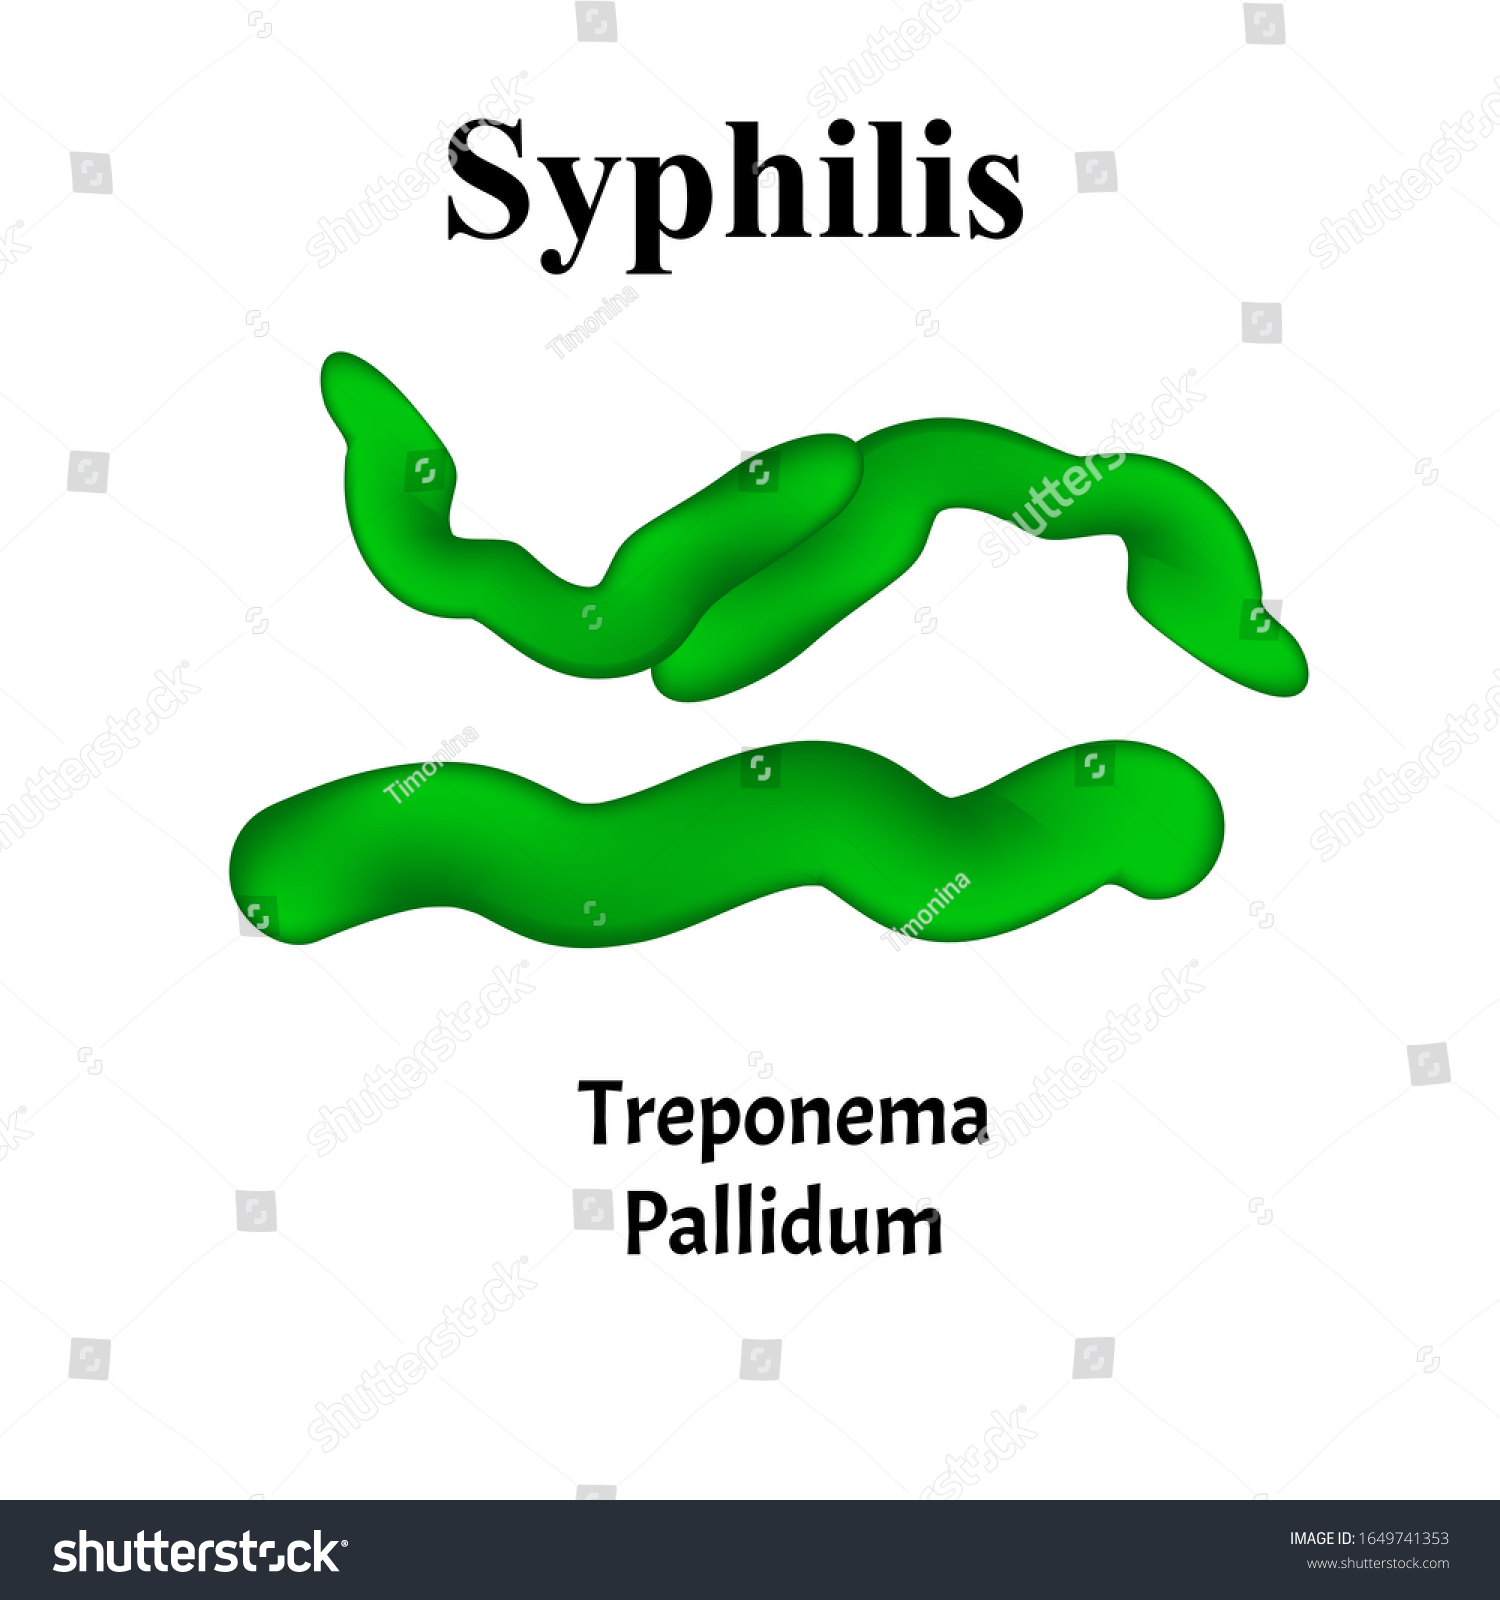 Treponema pallidum отрицательный. ИФА на Treponema pallidum. Анти трепонема ралладиум. АТ К трепонема паллидум что это. Сифилис трепонема паллидум.